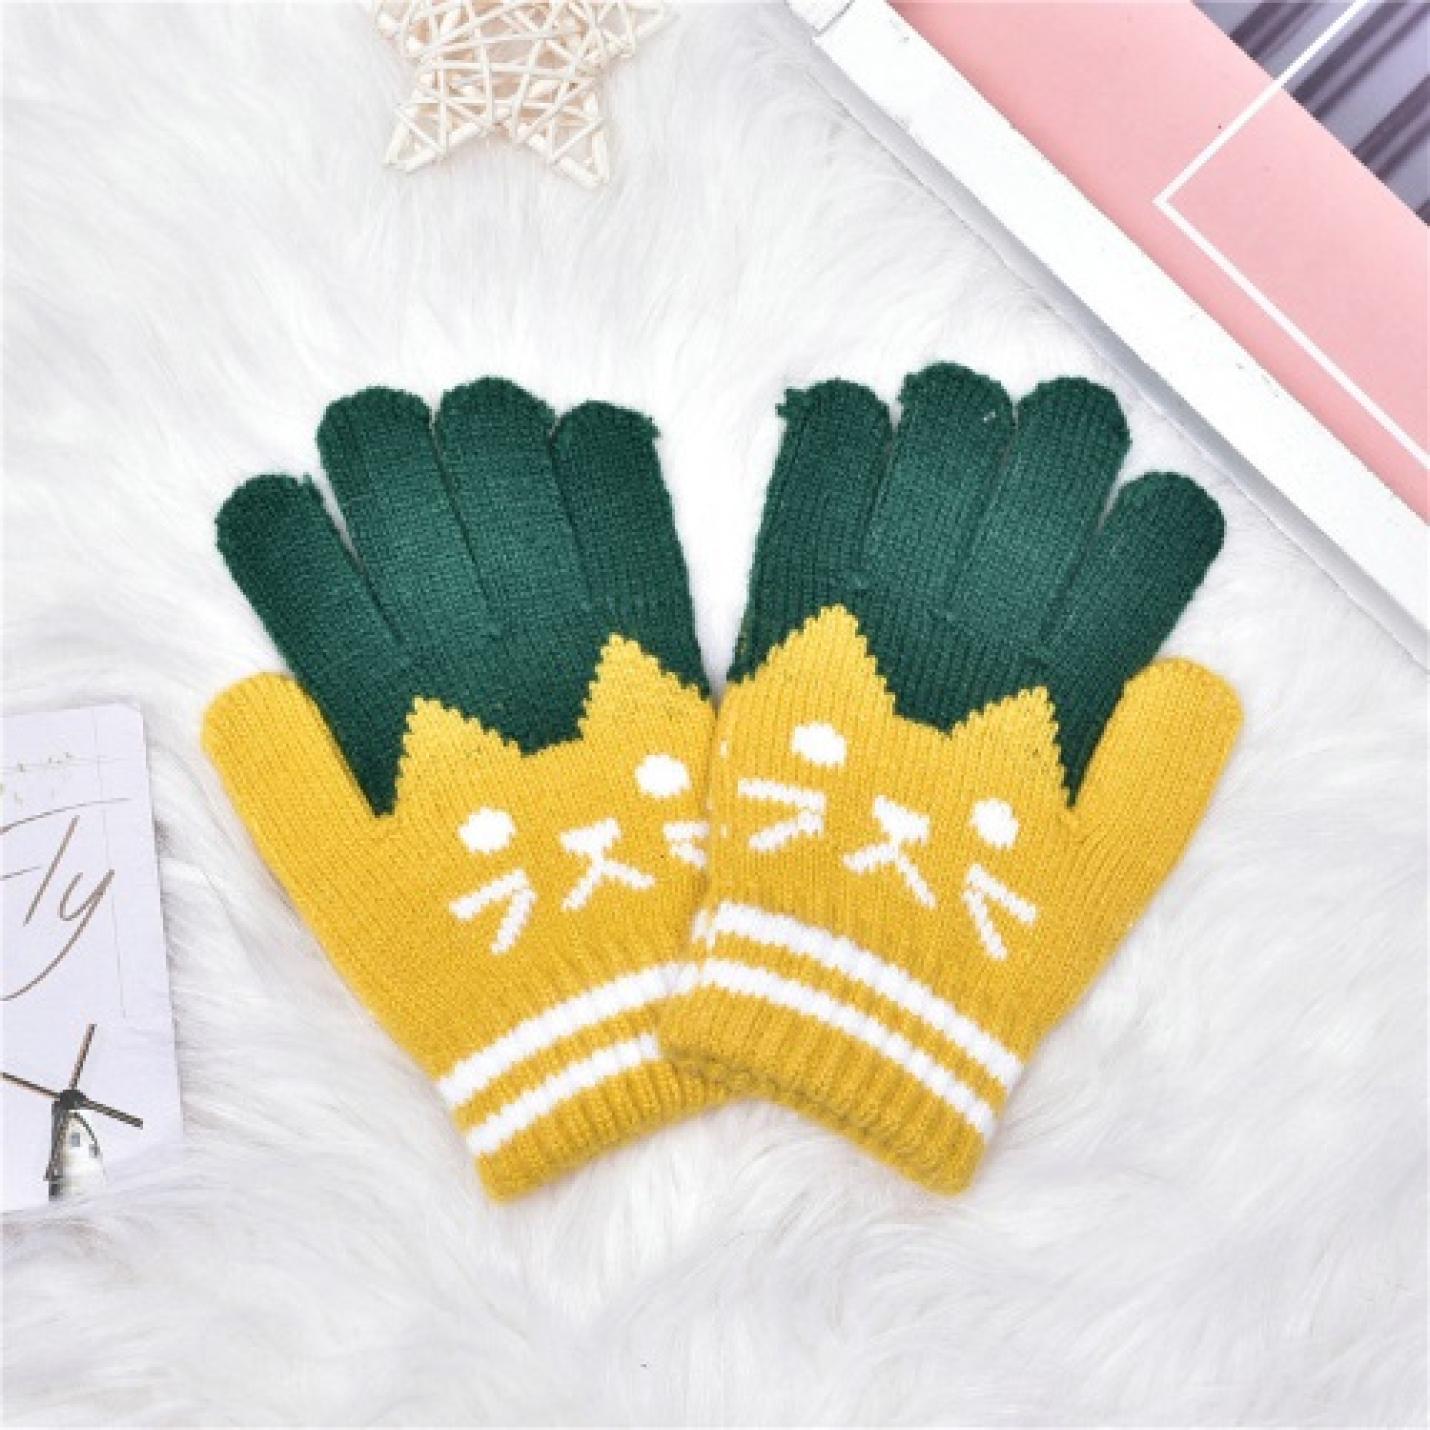 Hidzo Handschoenen - Kinderhandschoenen - Geel/Groen - Touchscreen